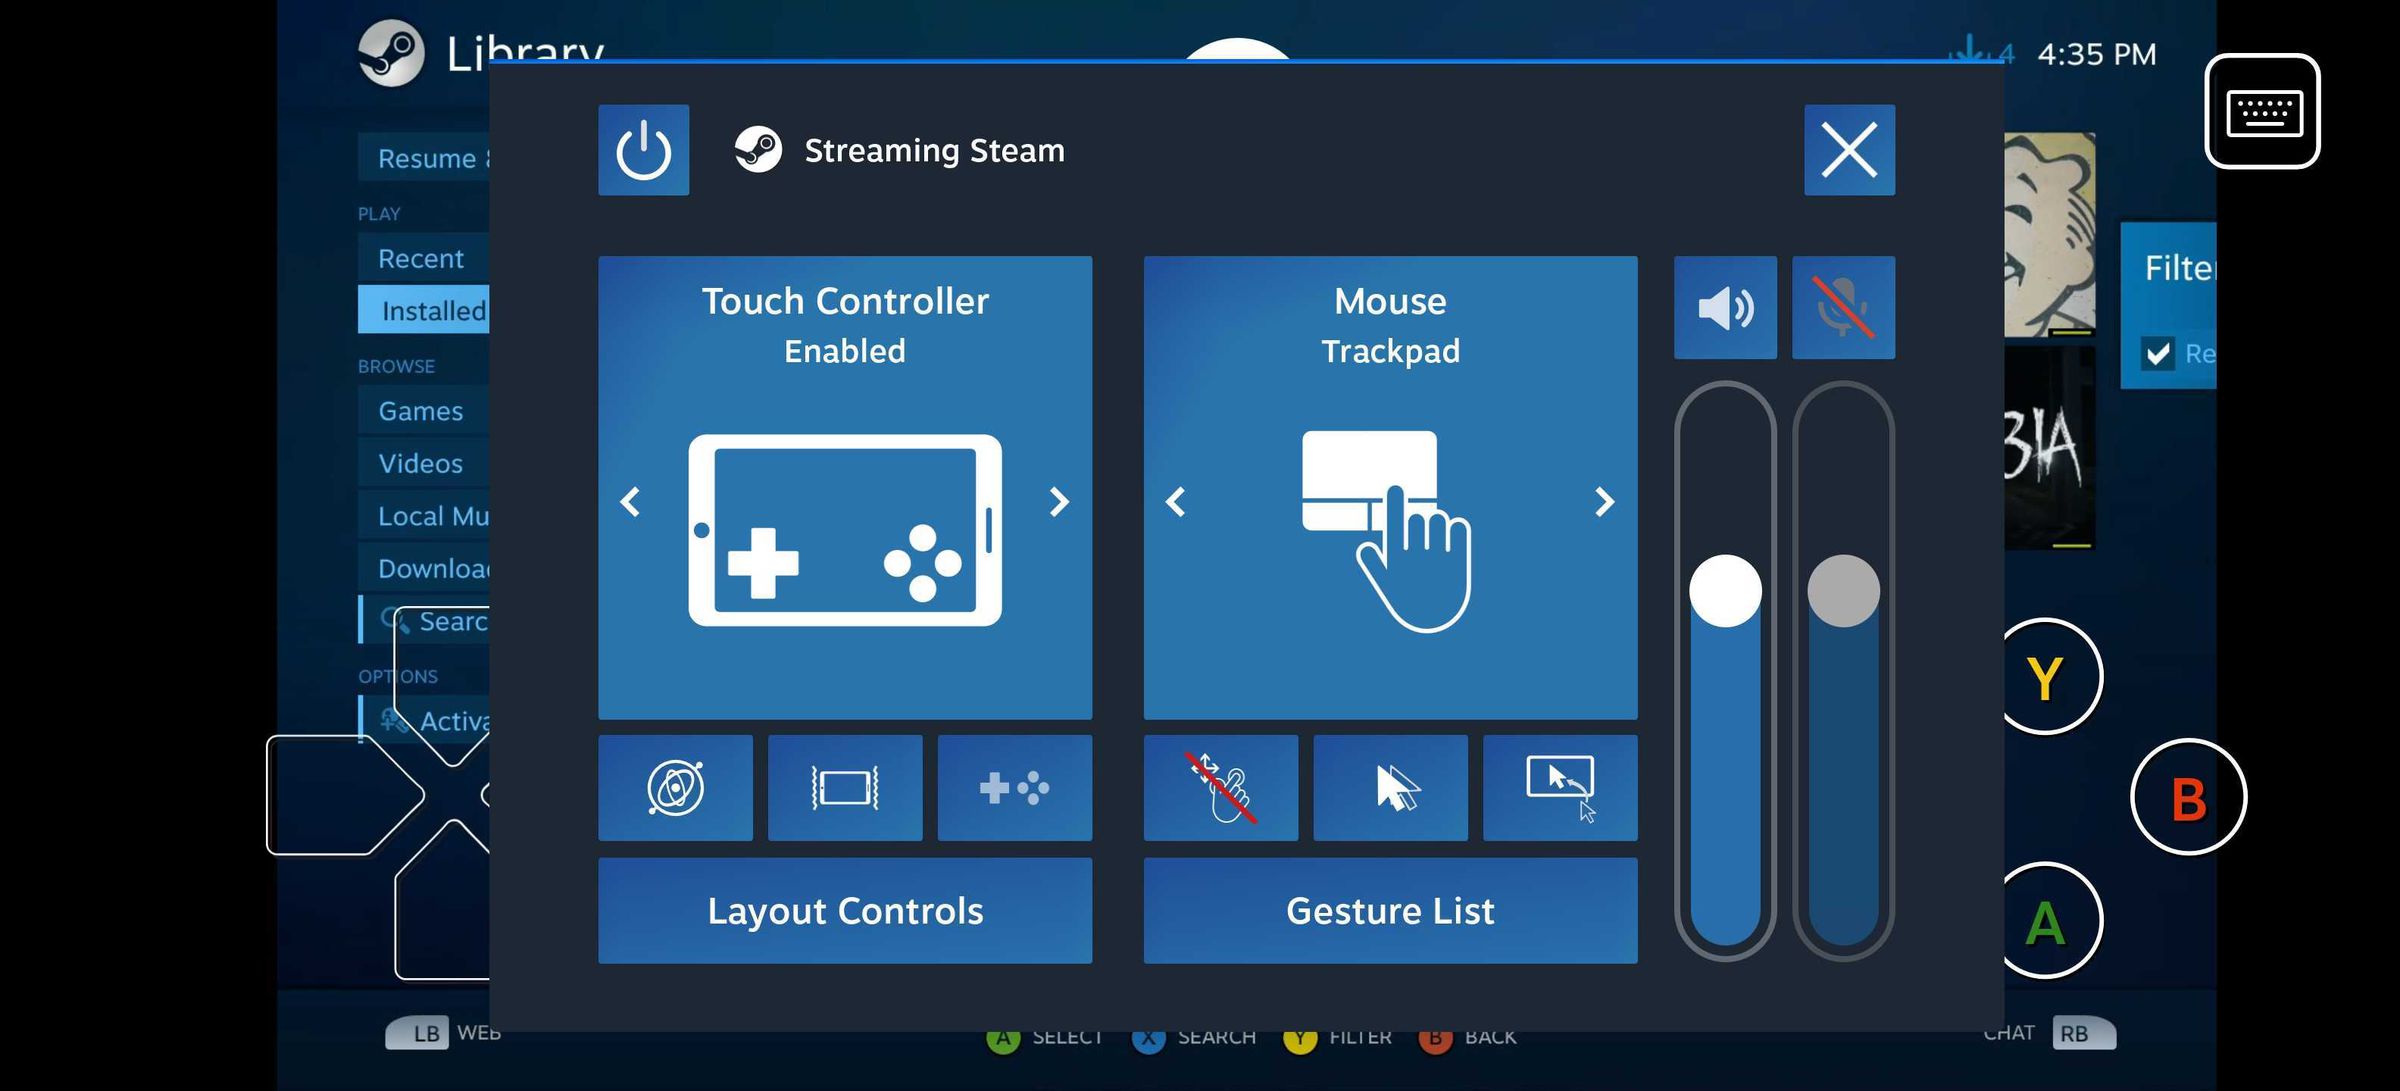 Zrzut ekranu aplikacji Steam link przedstawiający ustawienia konsoli, które można modyfikować.